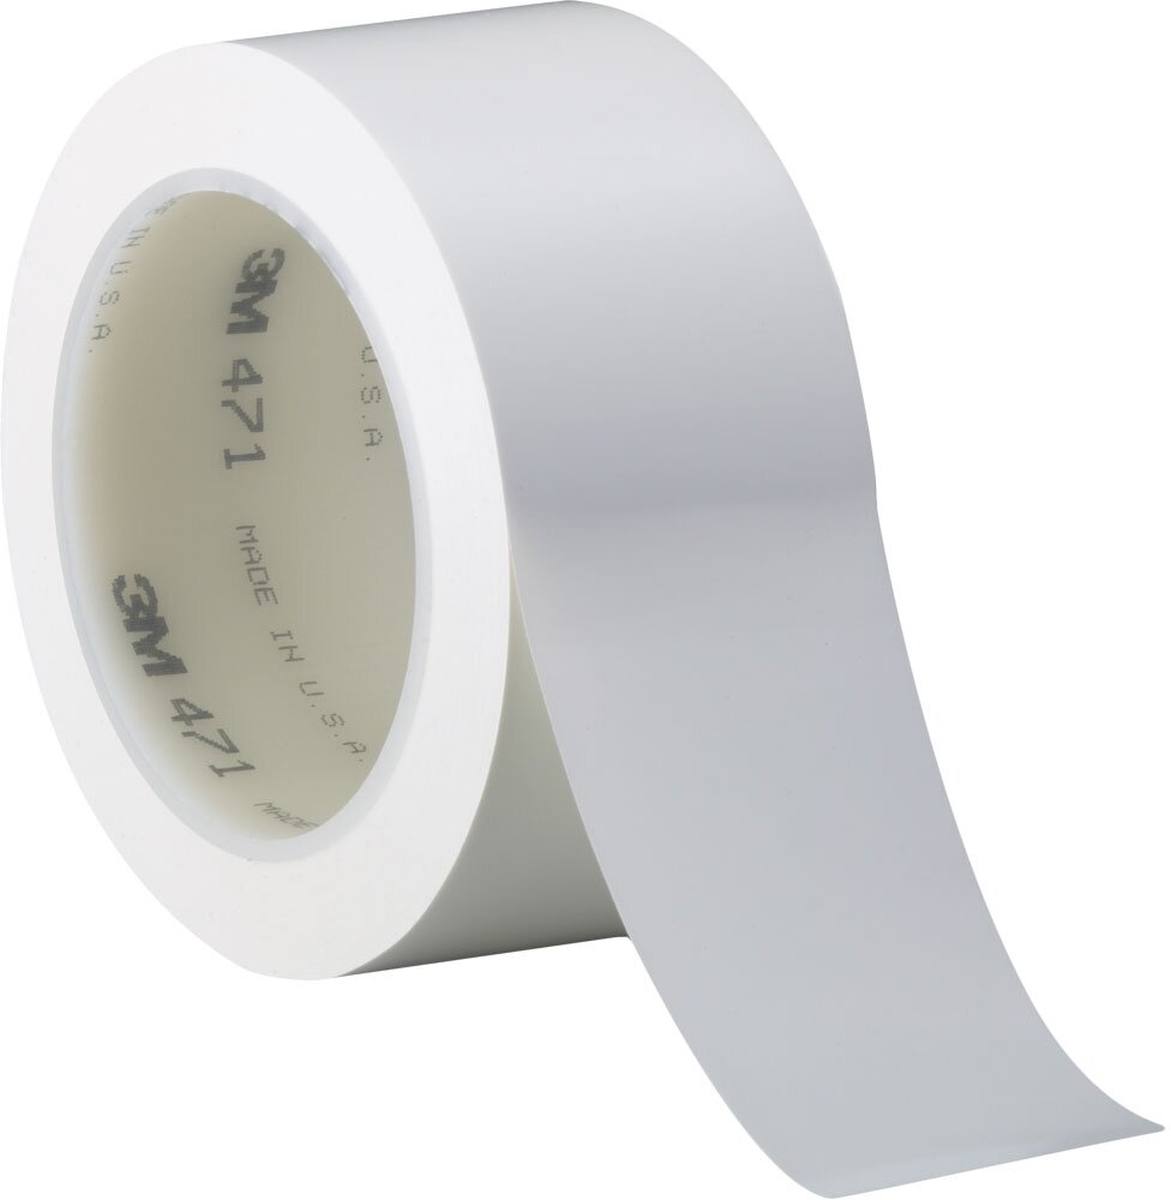 Nastro adesivo 3M in PVC morbido 471 F, bianco, 6 mm x 33 m, 0,13 mm